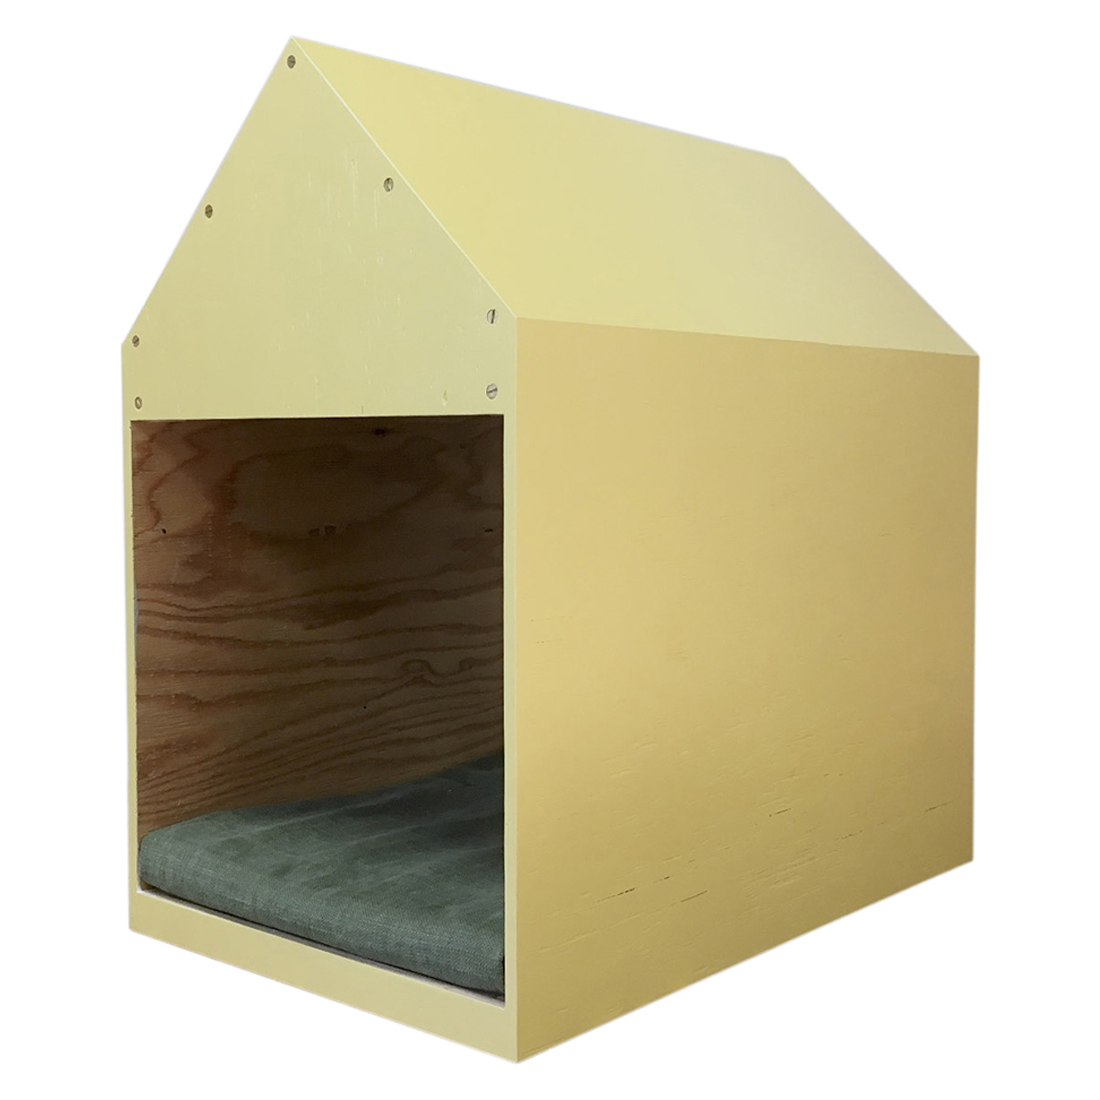 インテリアになる犬小屋 ドッグハウス ペットハウス 木製 イエロー 室内用 Iichi ハンドメイド クラフト作品 手仕事品の通販